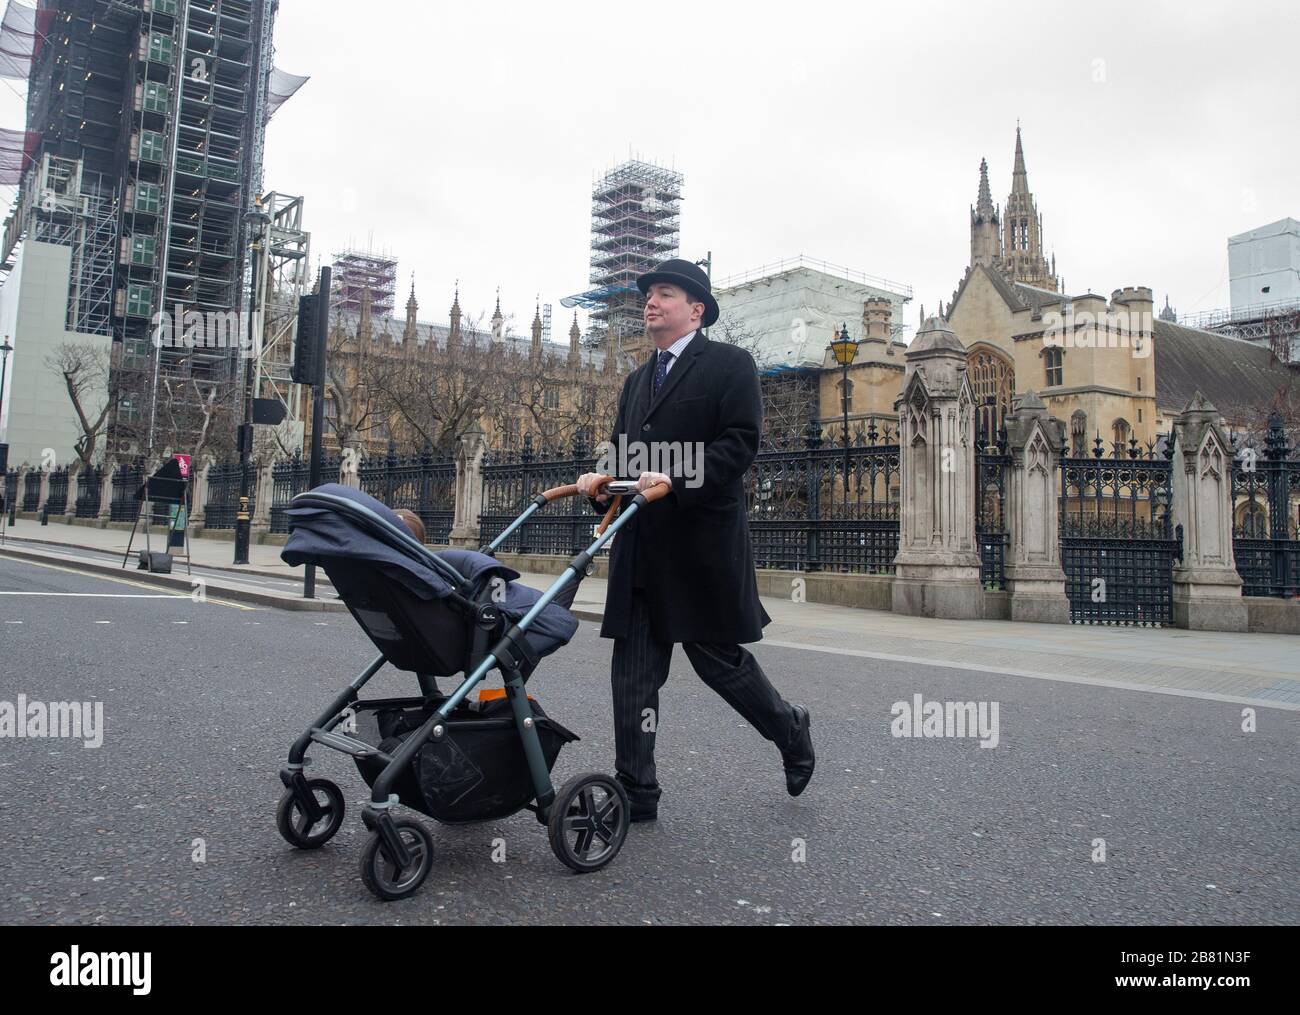 Ein Mann, der einen Bowler-Hut trägt, läuft am Parlament vorbei, da die Straßen Londons aus Angst vor dem Coronavirus verlassen sind. Stockfoto